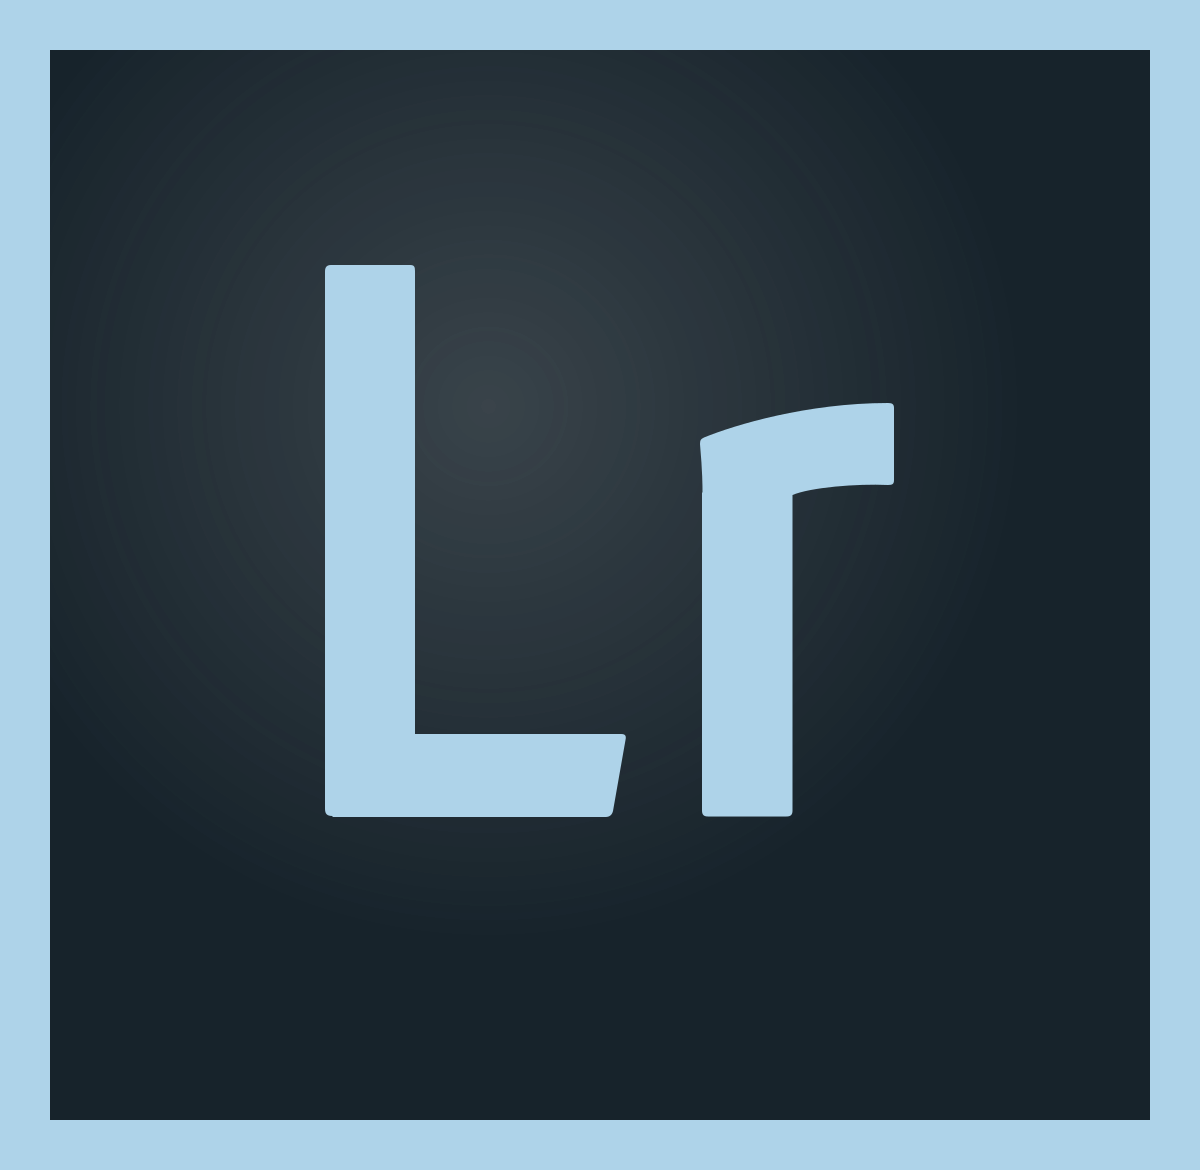 L'outil d'édition de photos pro Adobe Lightroom arrive sur l'App Store pour les utilisateurs Mac